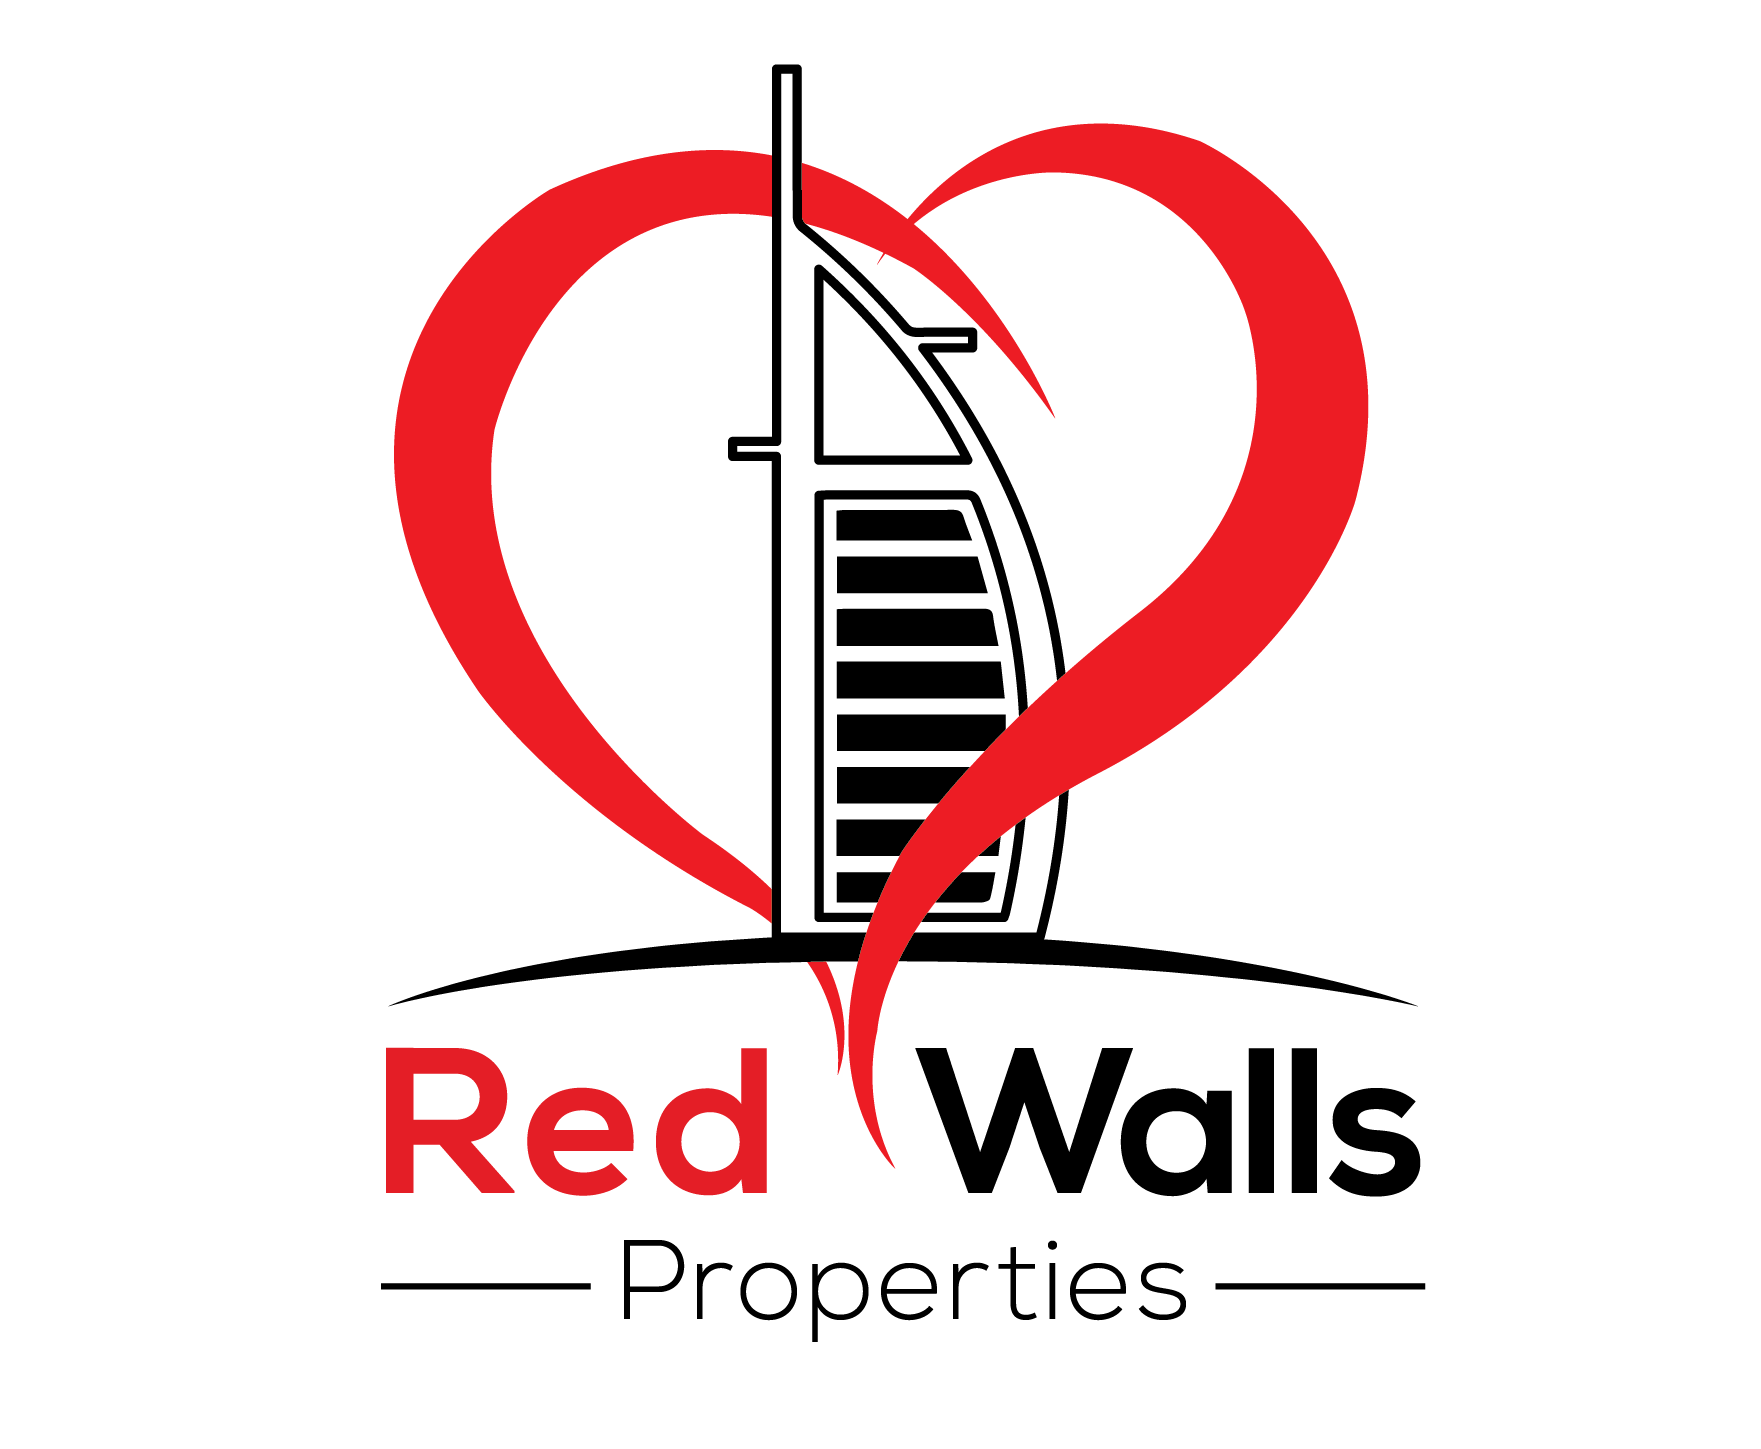 Red Walls Properties